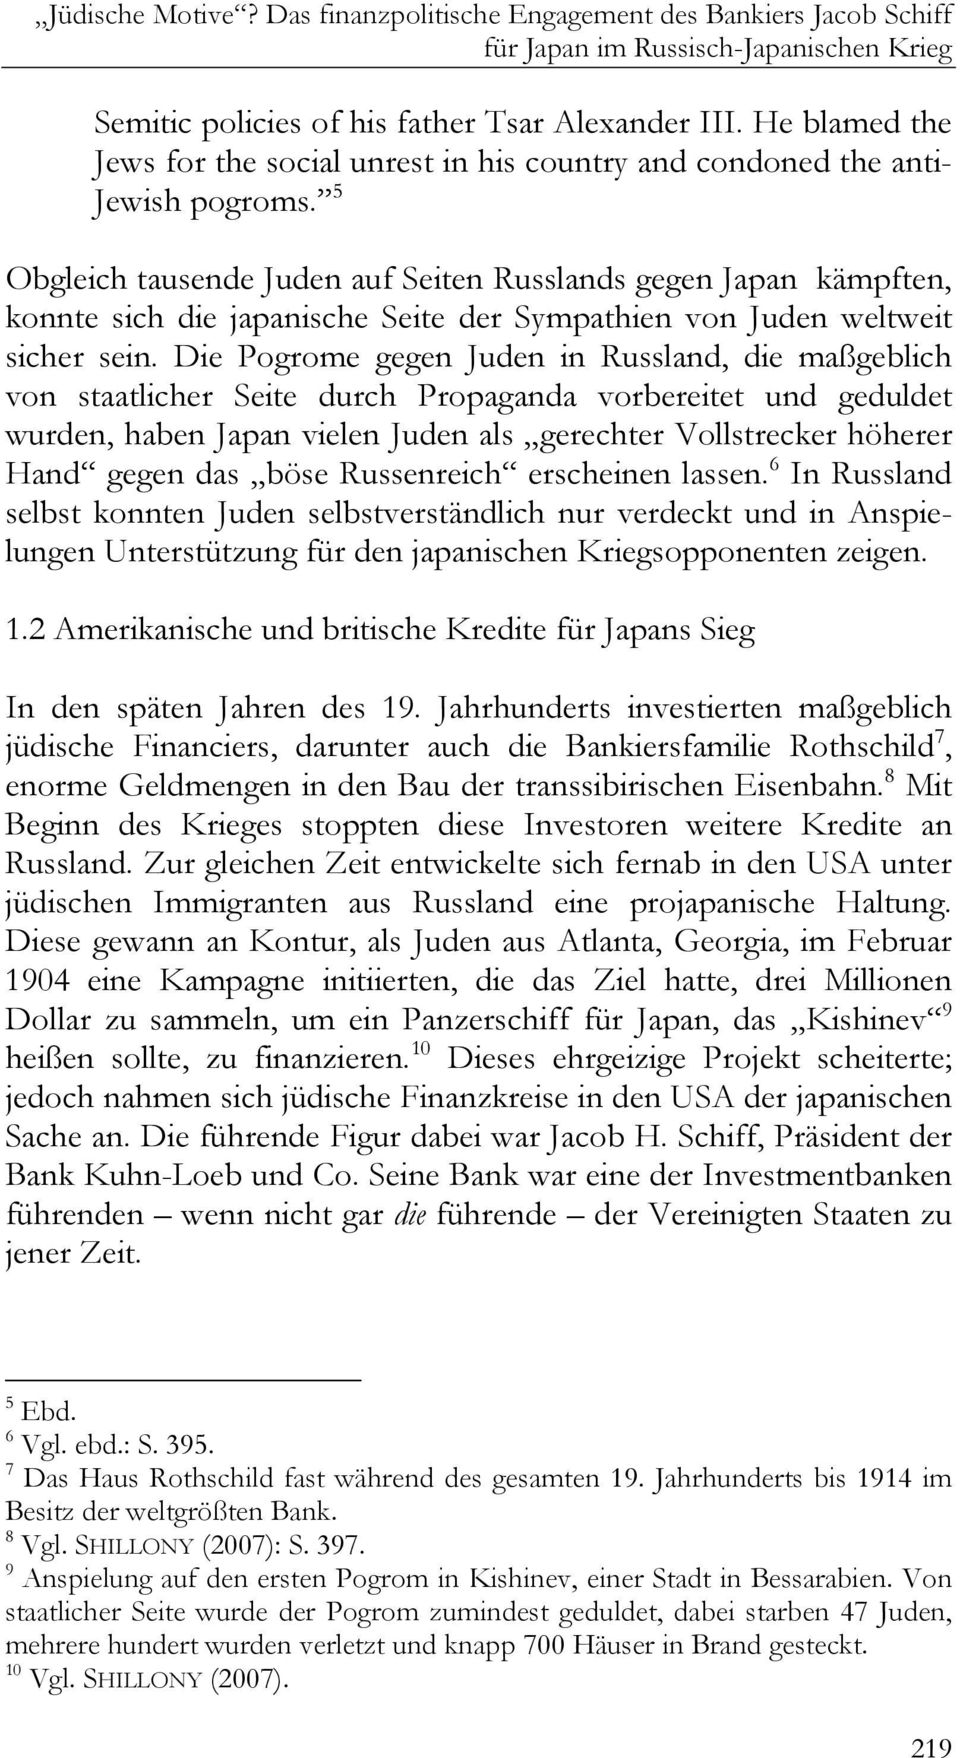 5 Obgleich tausende Juden auf Seiten Russlands gegen Japan kämpften, konnte sich die japanische Seite der Sympathien von Juden weltweit sicher sein.